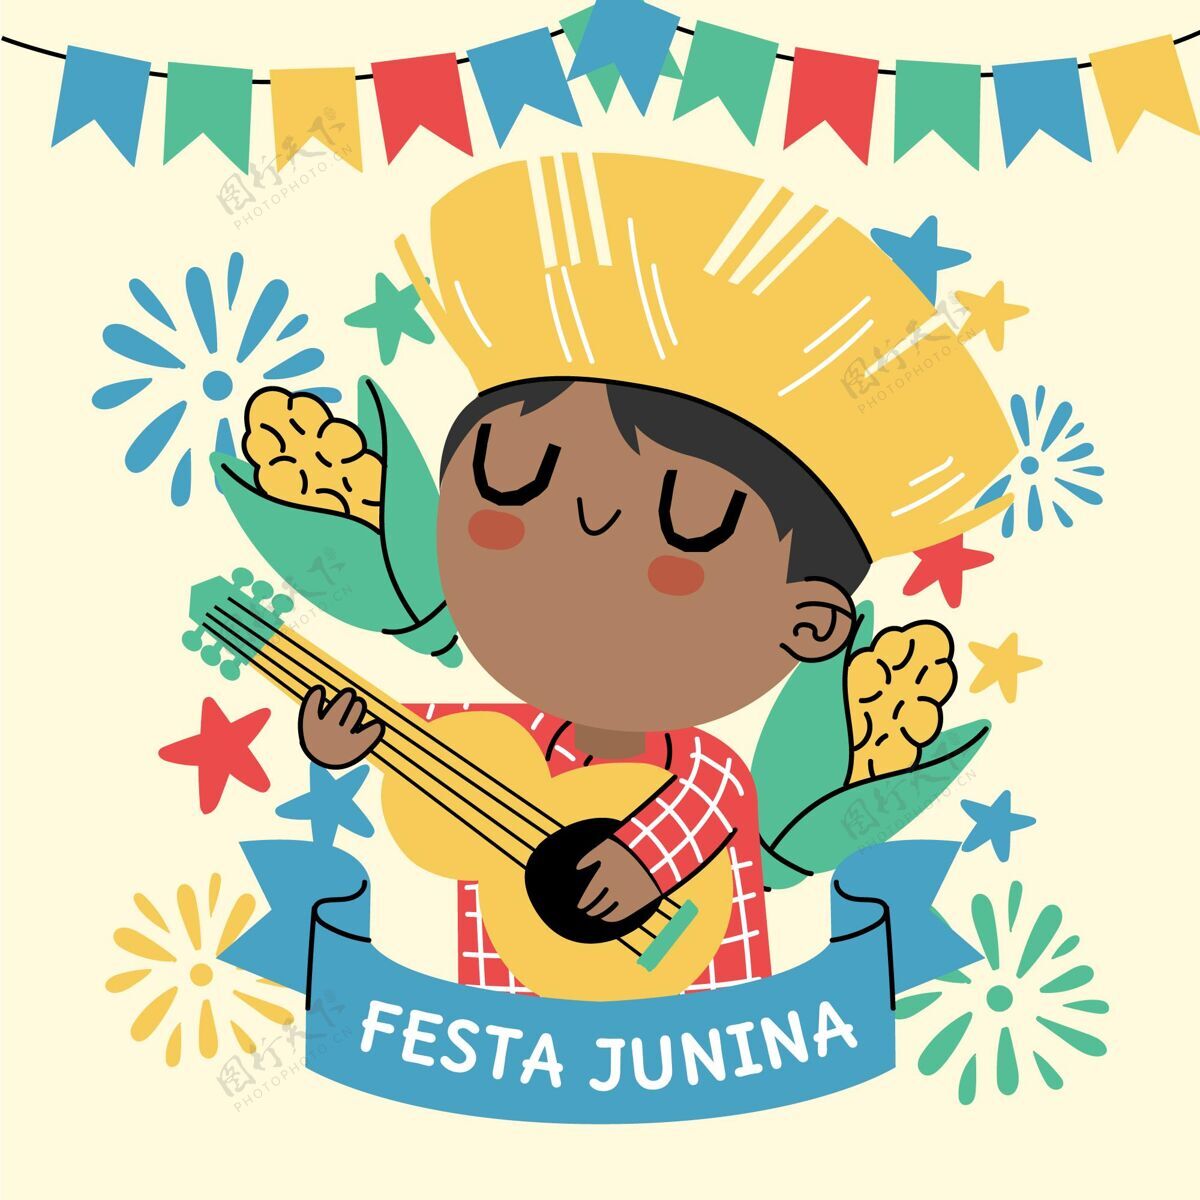 巴西手绘festajunina插图圣约节朱尼娜节仲夏节